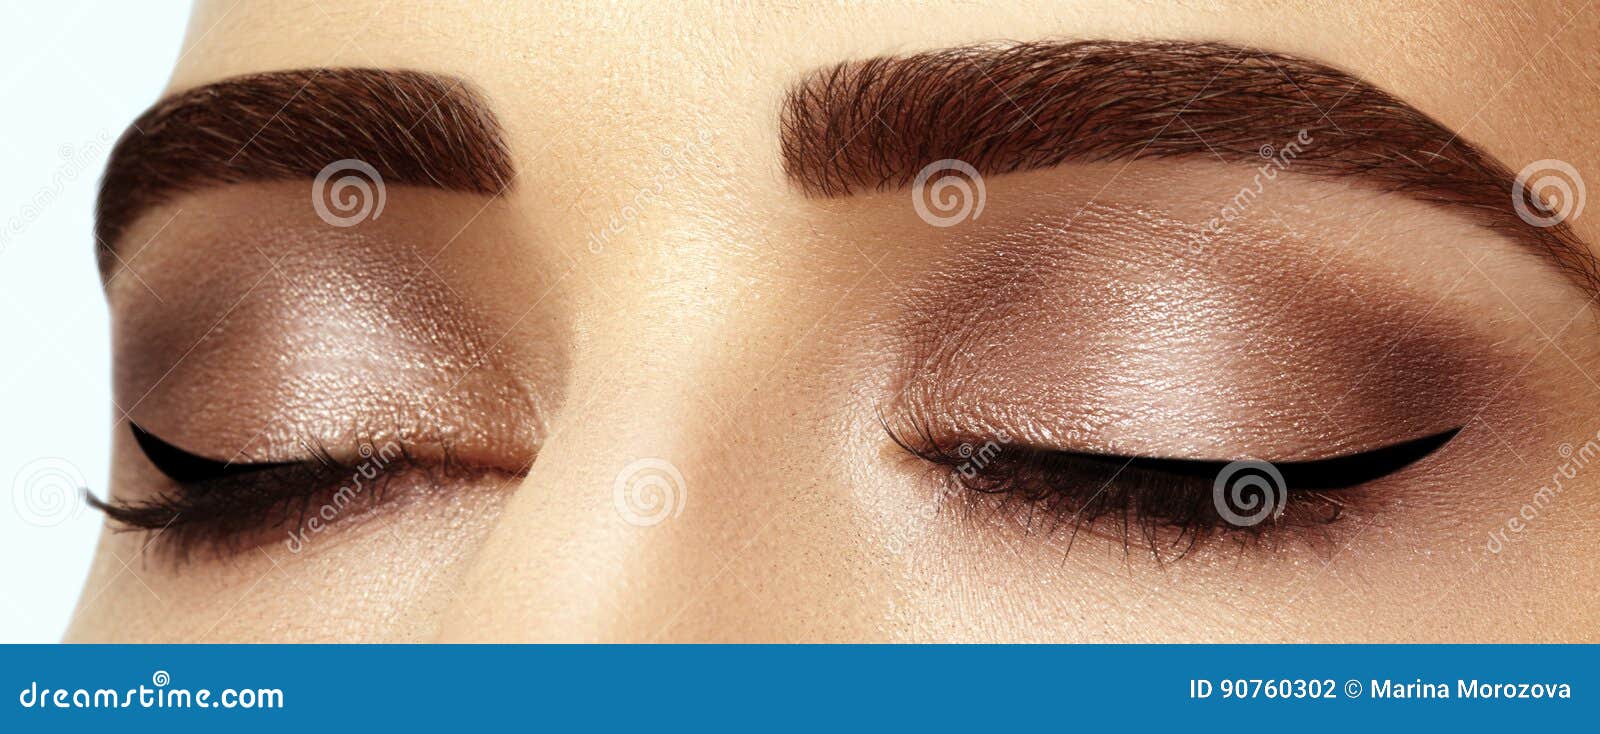 perfect  of eyebrows, brown eyeshadows and long eyelashes. closeup macro shot of fashion smoky eyes visage